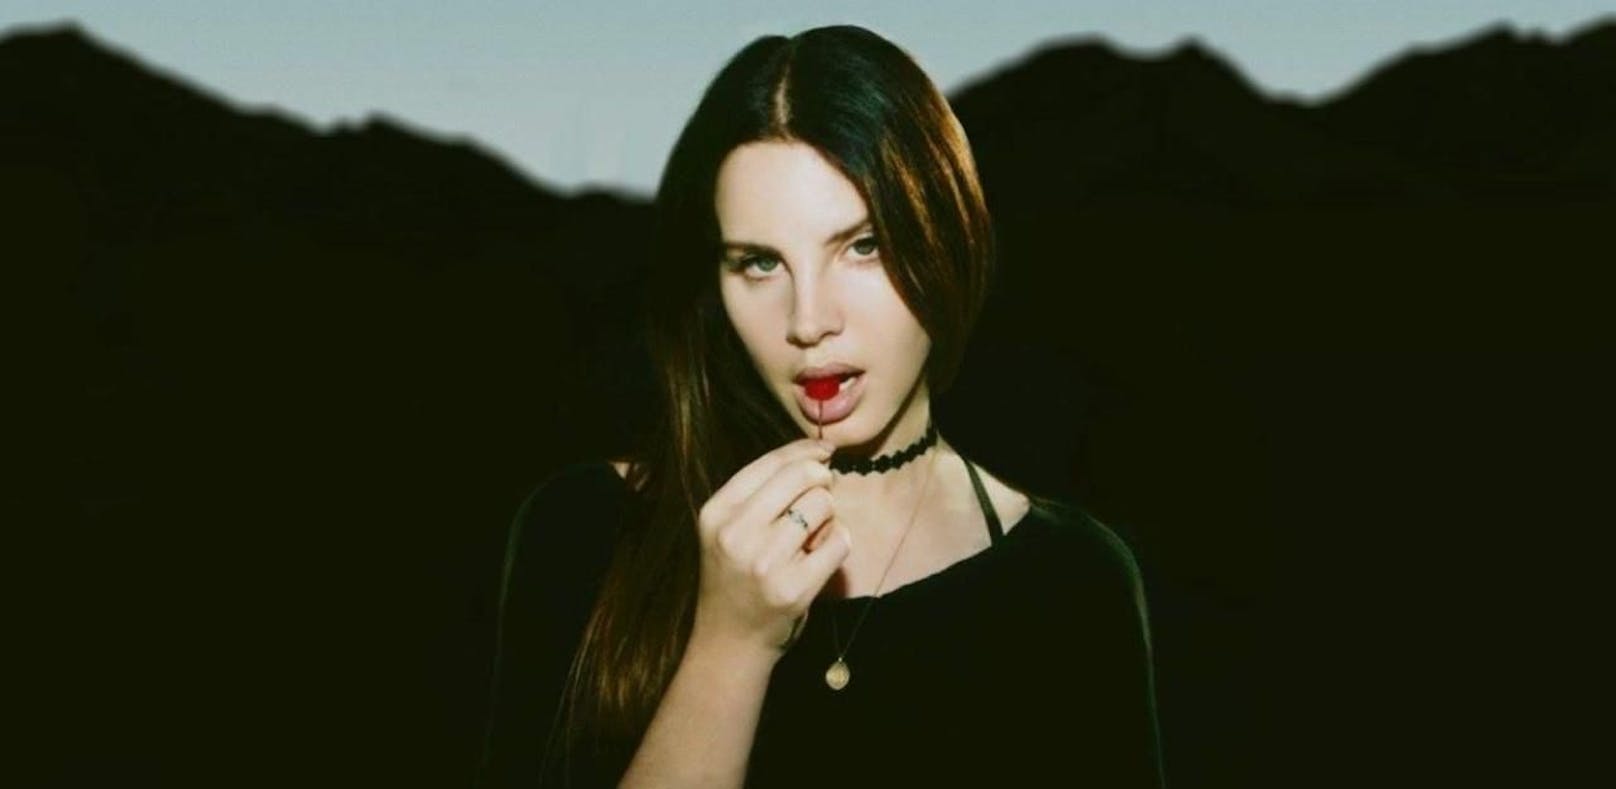 Zwei neue Songs von Lana Del Rey veröffentlicht